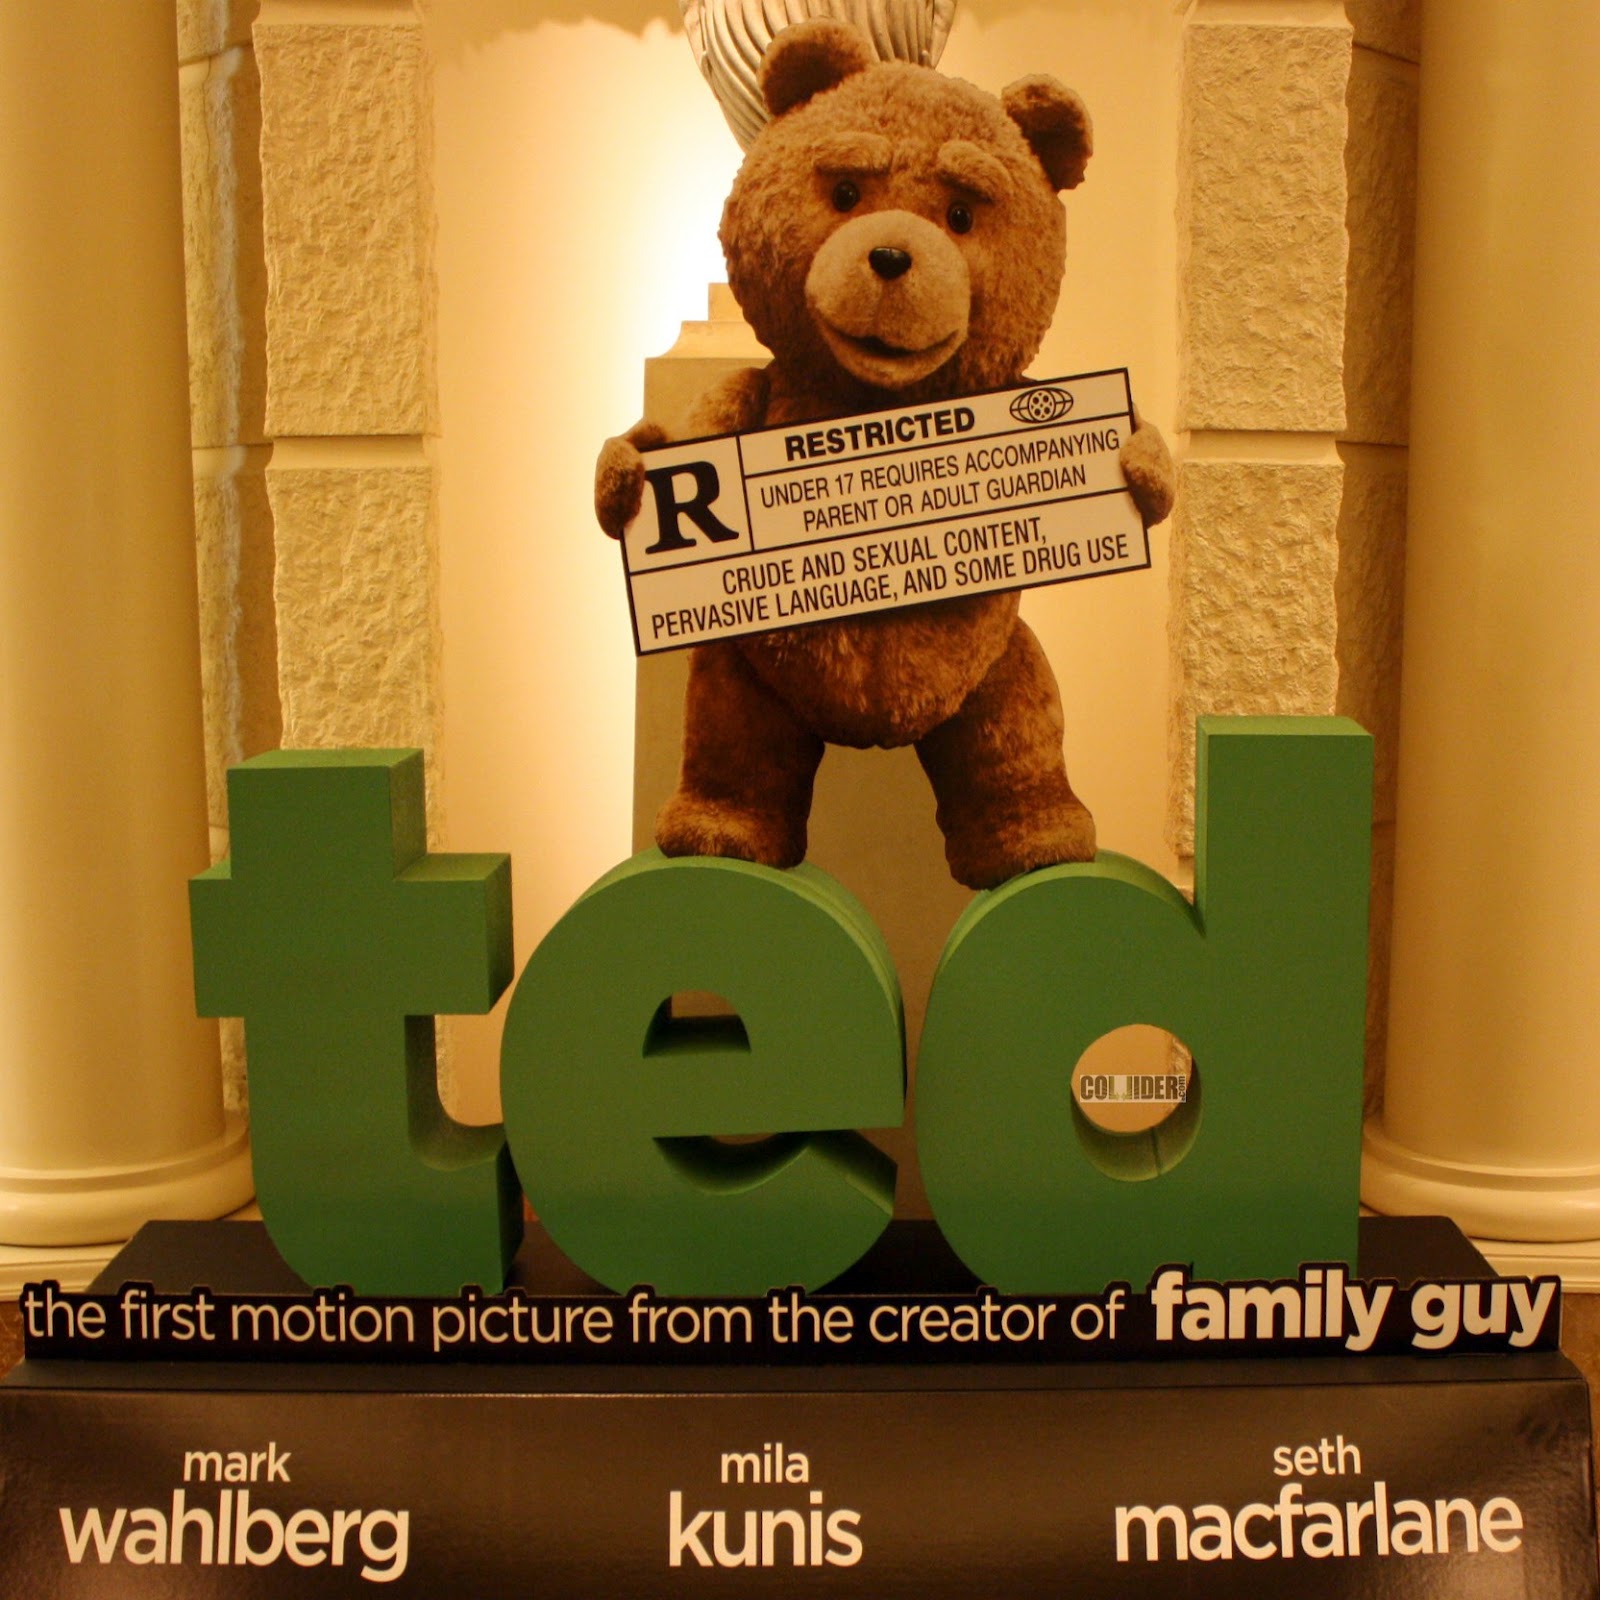 Ursinho falante do filme Ted vai virar série